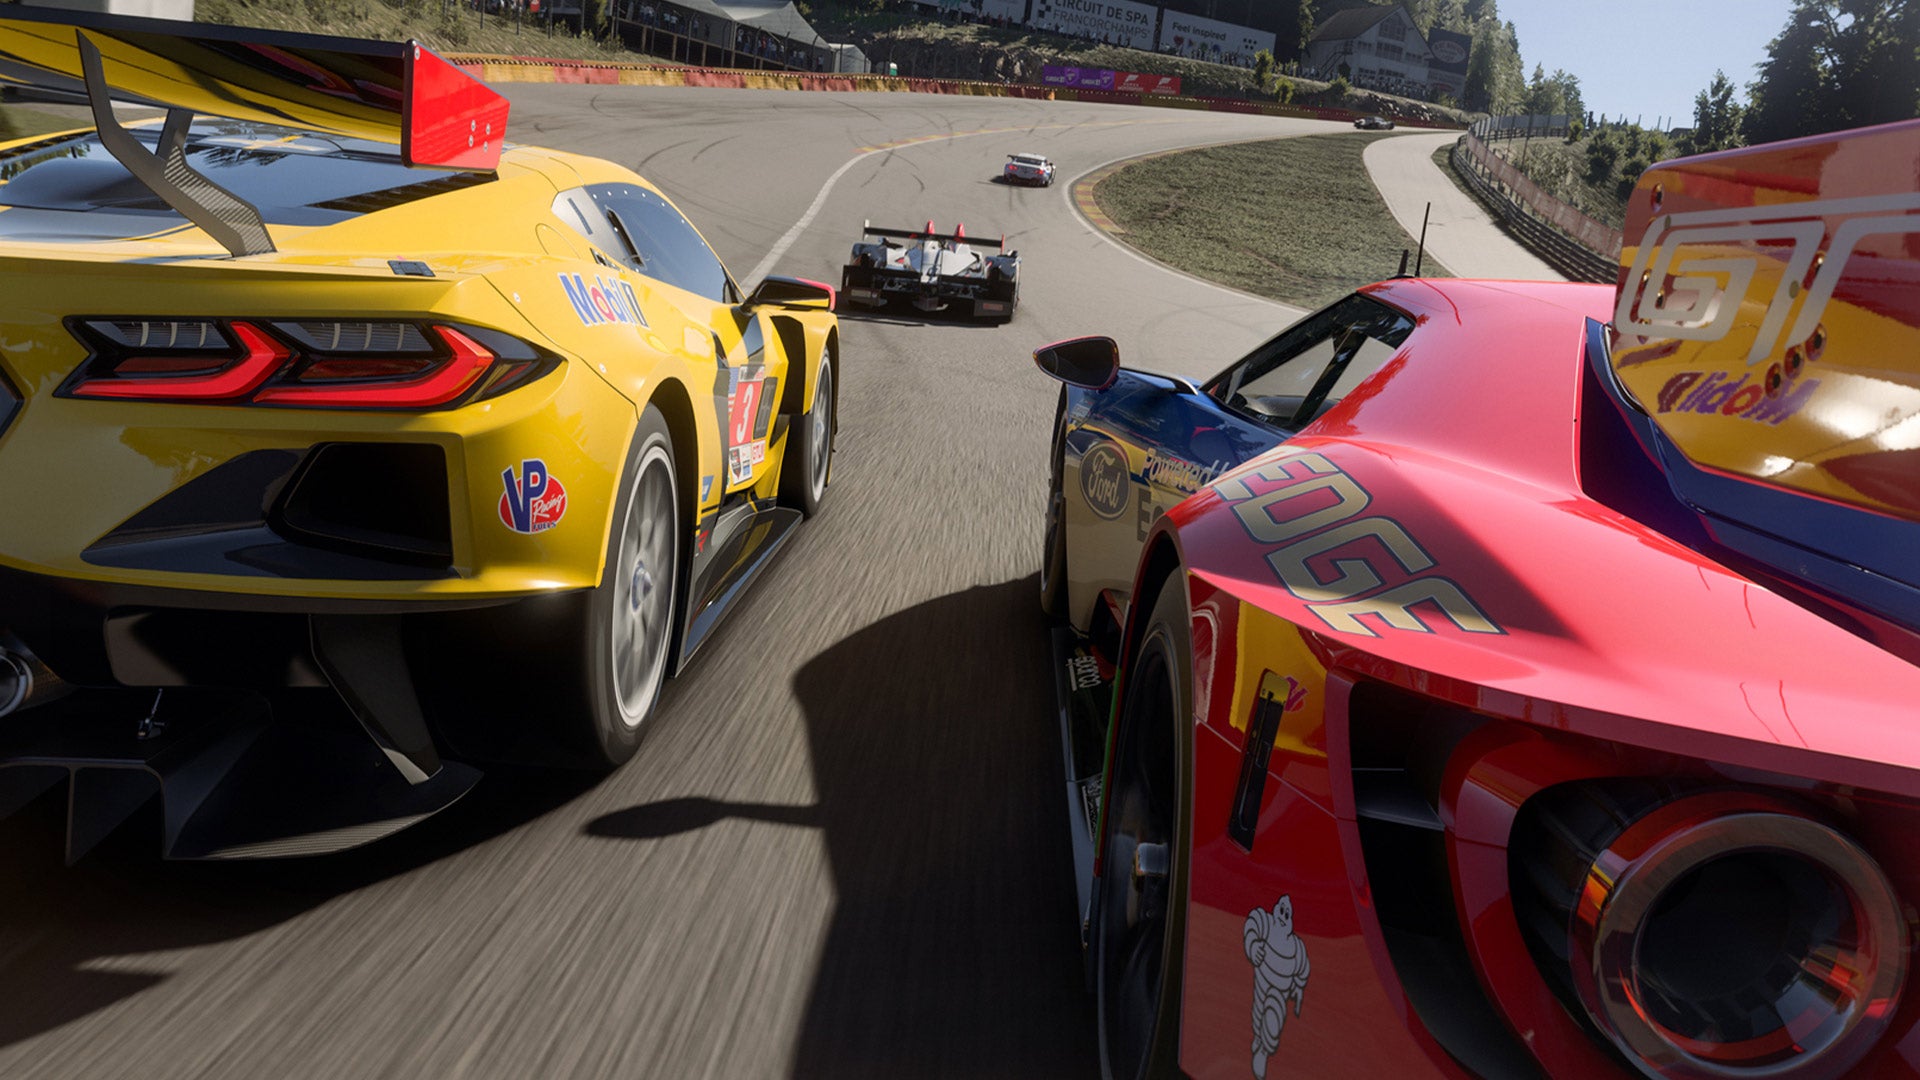 La prochaine mise à jour de Forza Motorsport, qui sera disponible cette semaine, ajustera la "cote de sécurité"